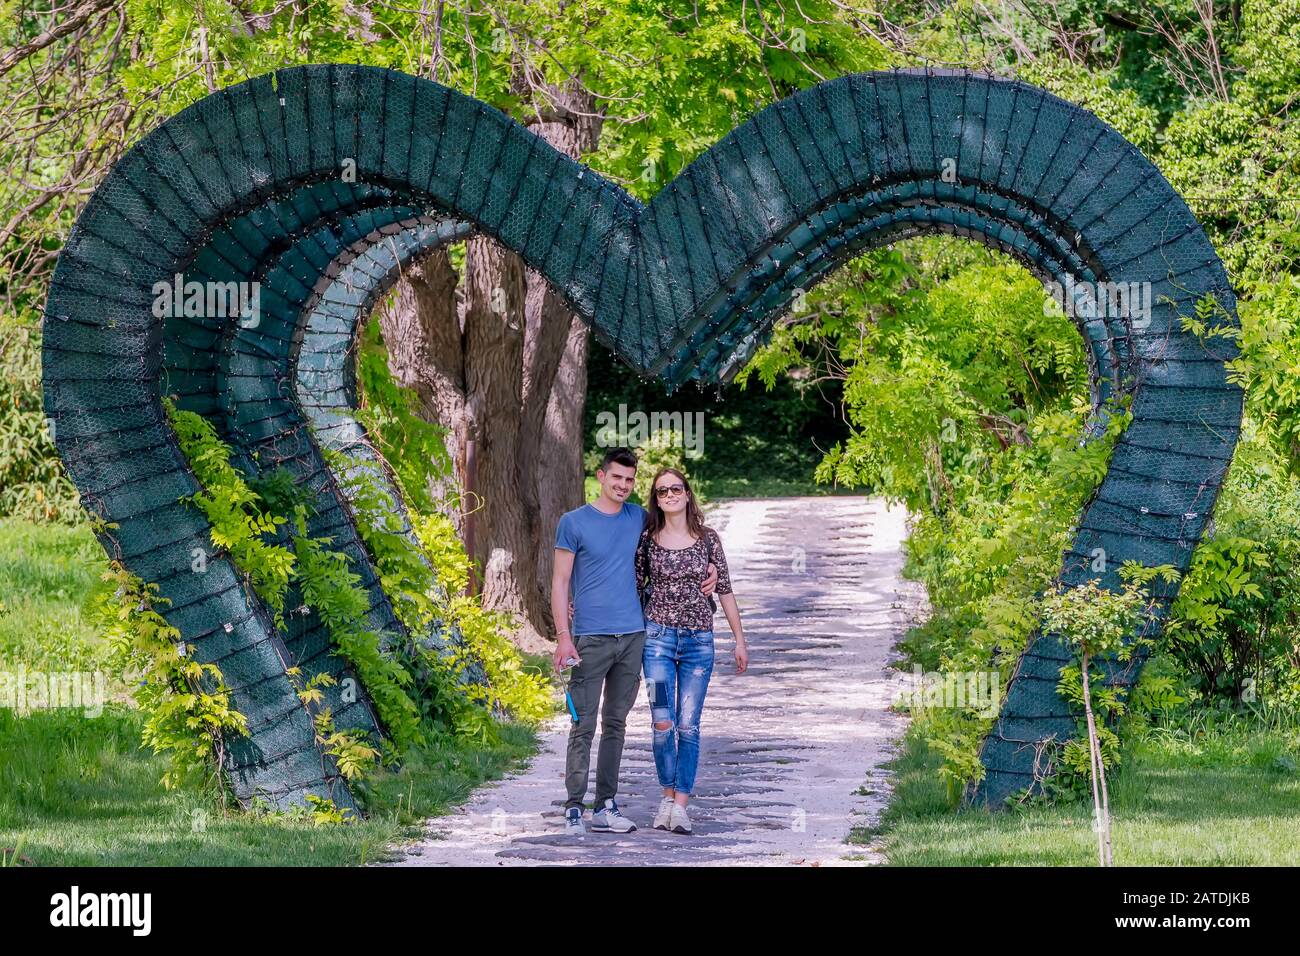 Das junge, engagierte Paar spazieren unter einem grünen, herzförmigen Bogen im öffentlichen Park Craiova, Rumänien Stockfoto